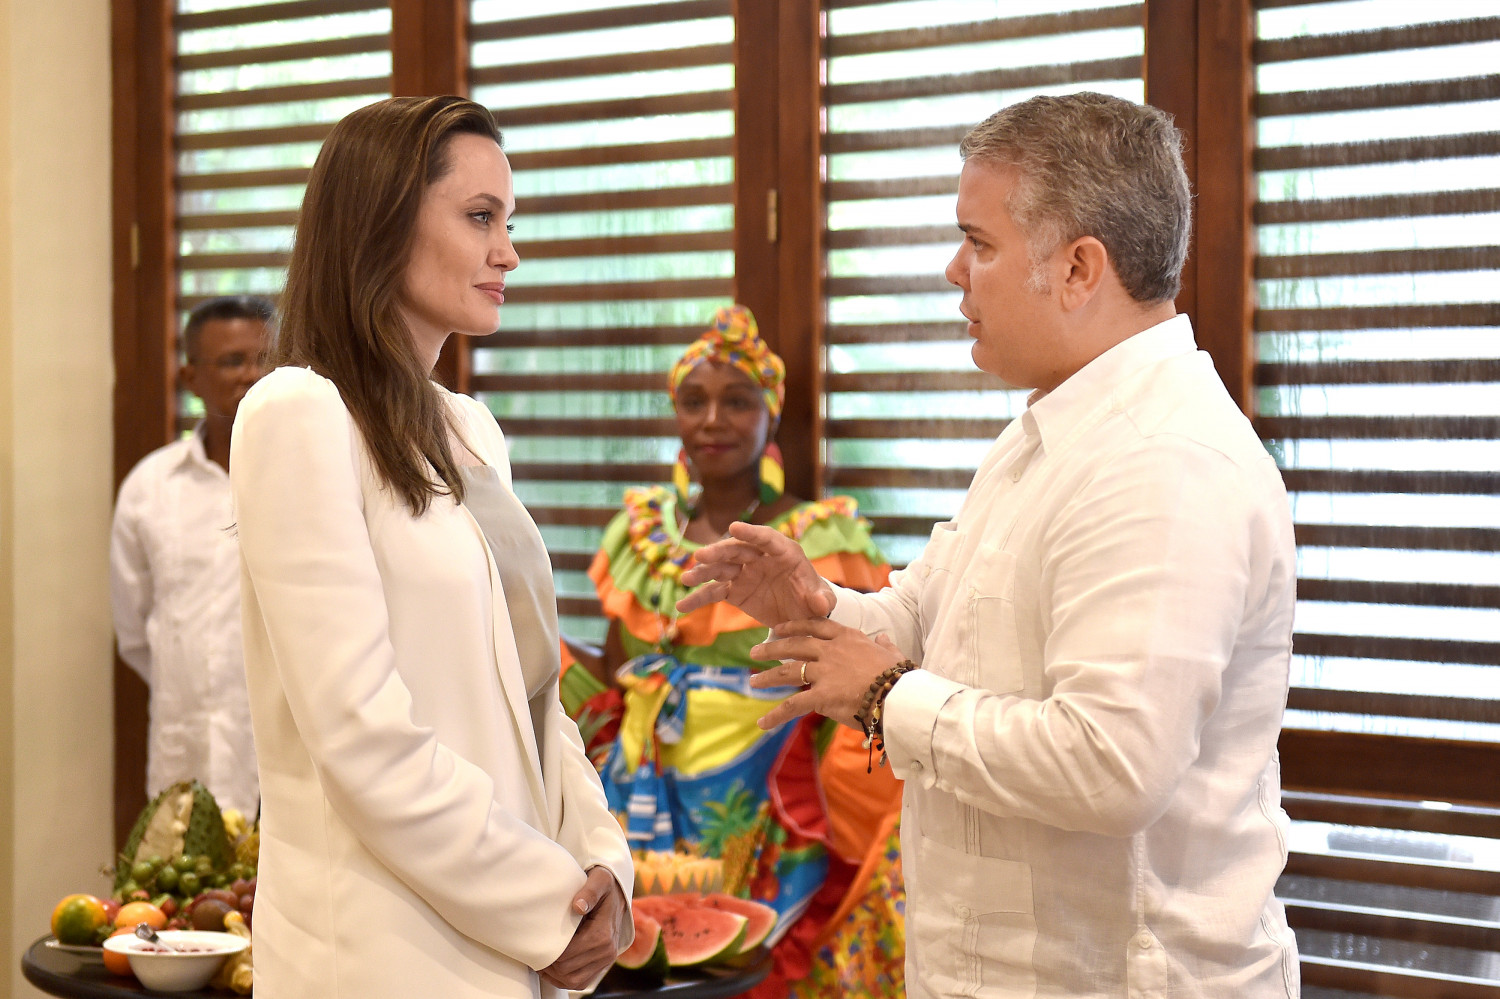 Angelina Jolie Urges International Support for Venezuelan Children